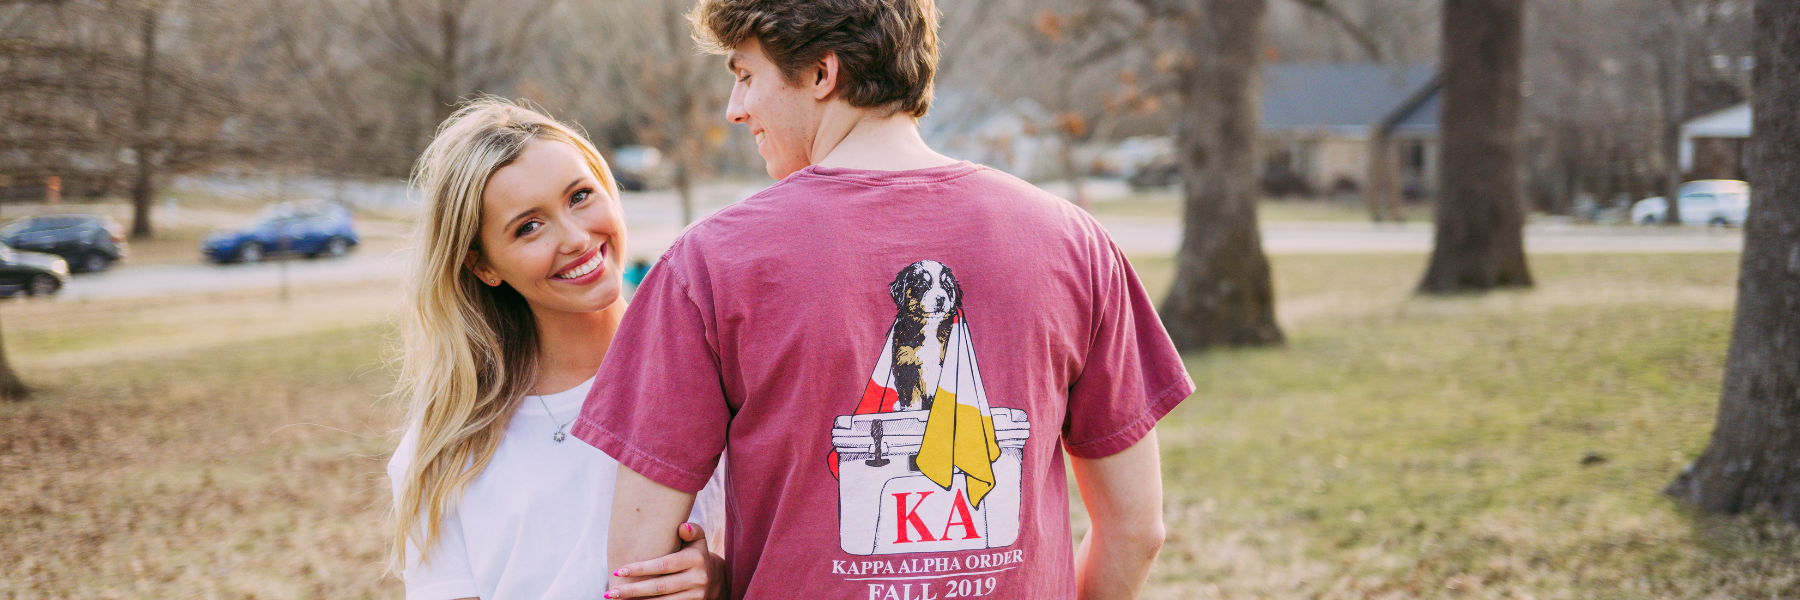 Kappa Alpha Philanthropy Tshirt Designs